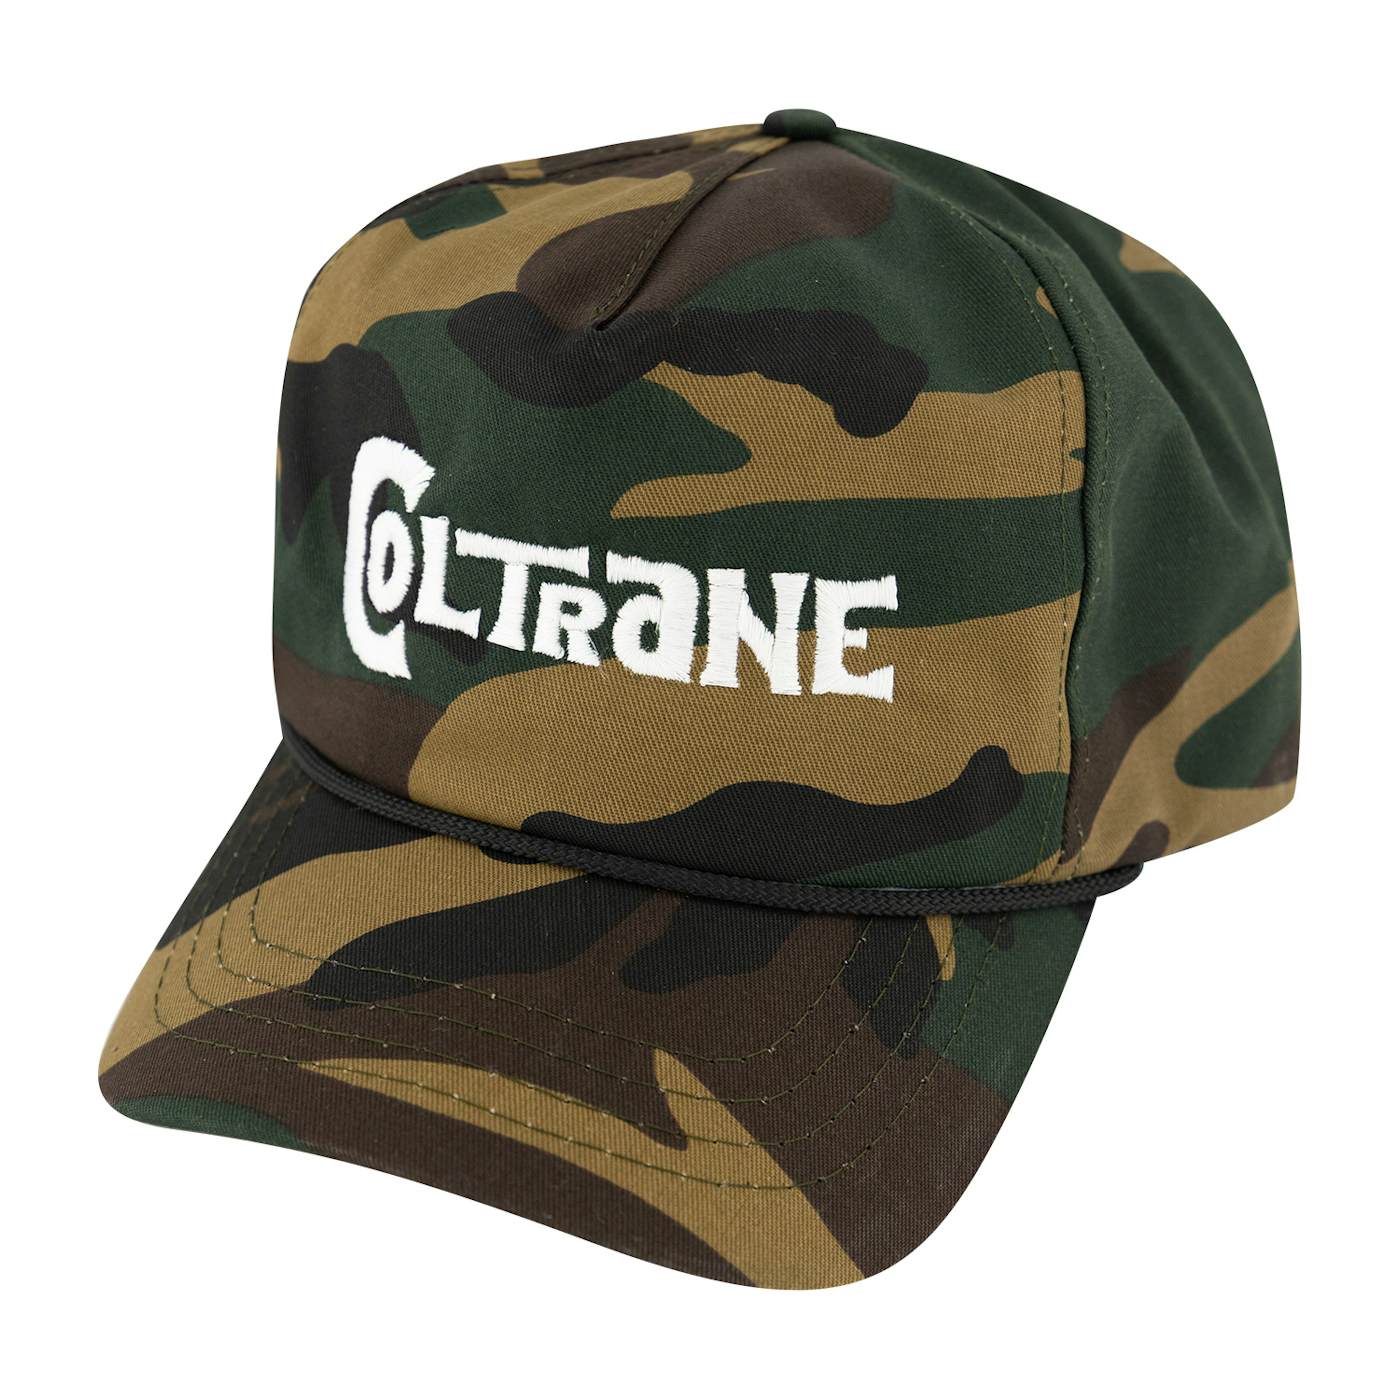 John Coltrane Coltrane Embroidered Camo Hat